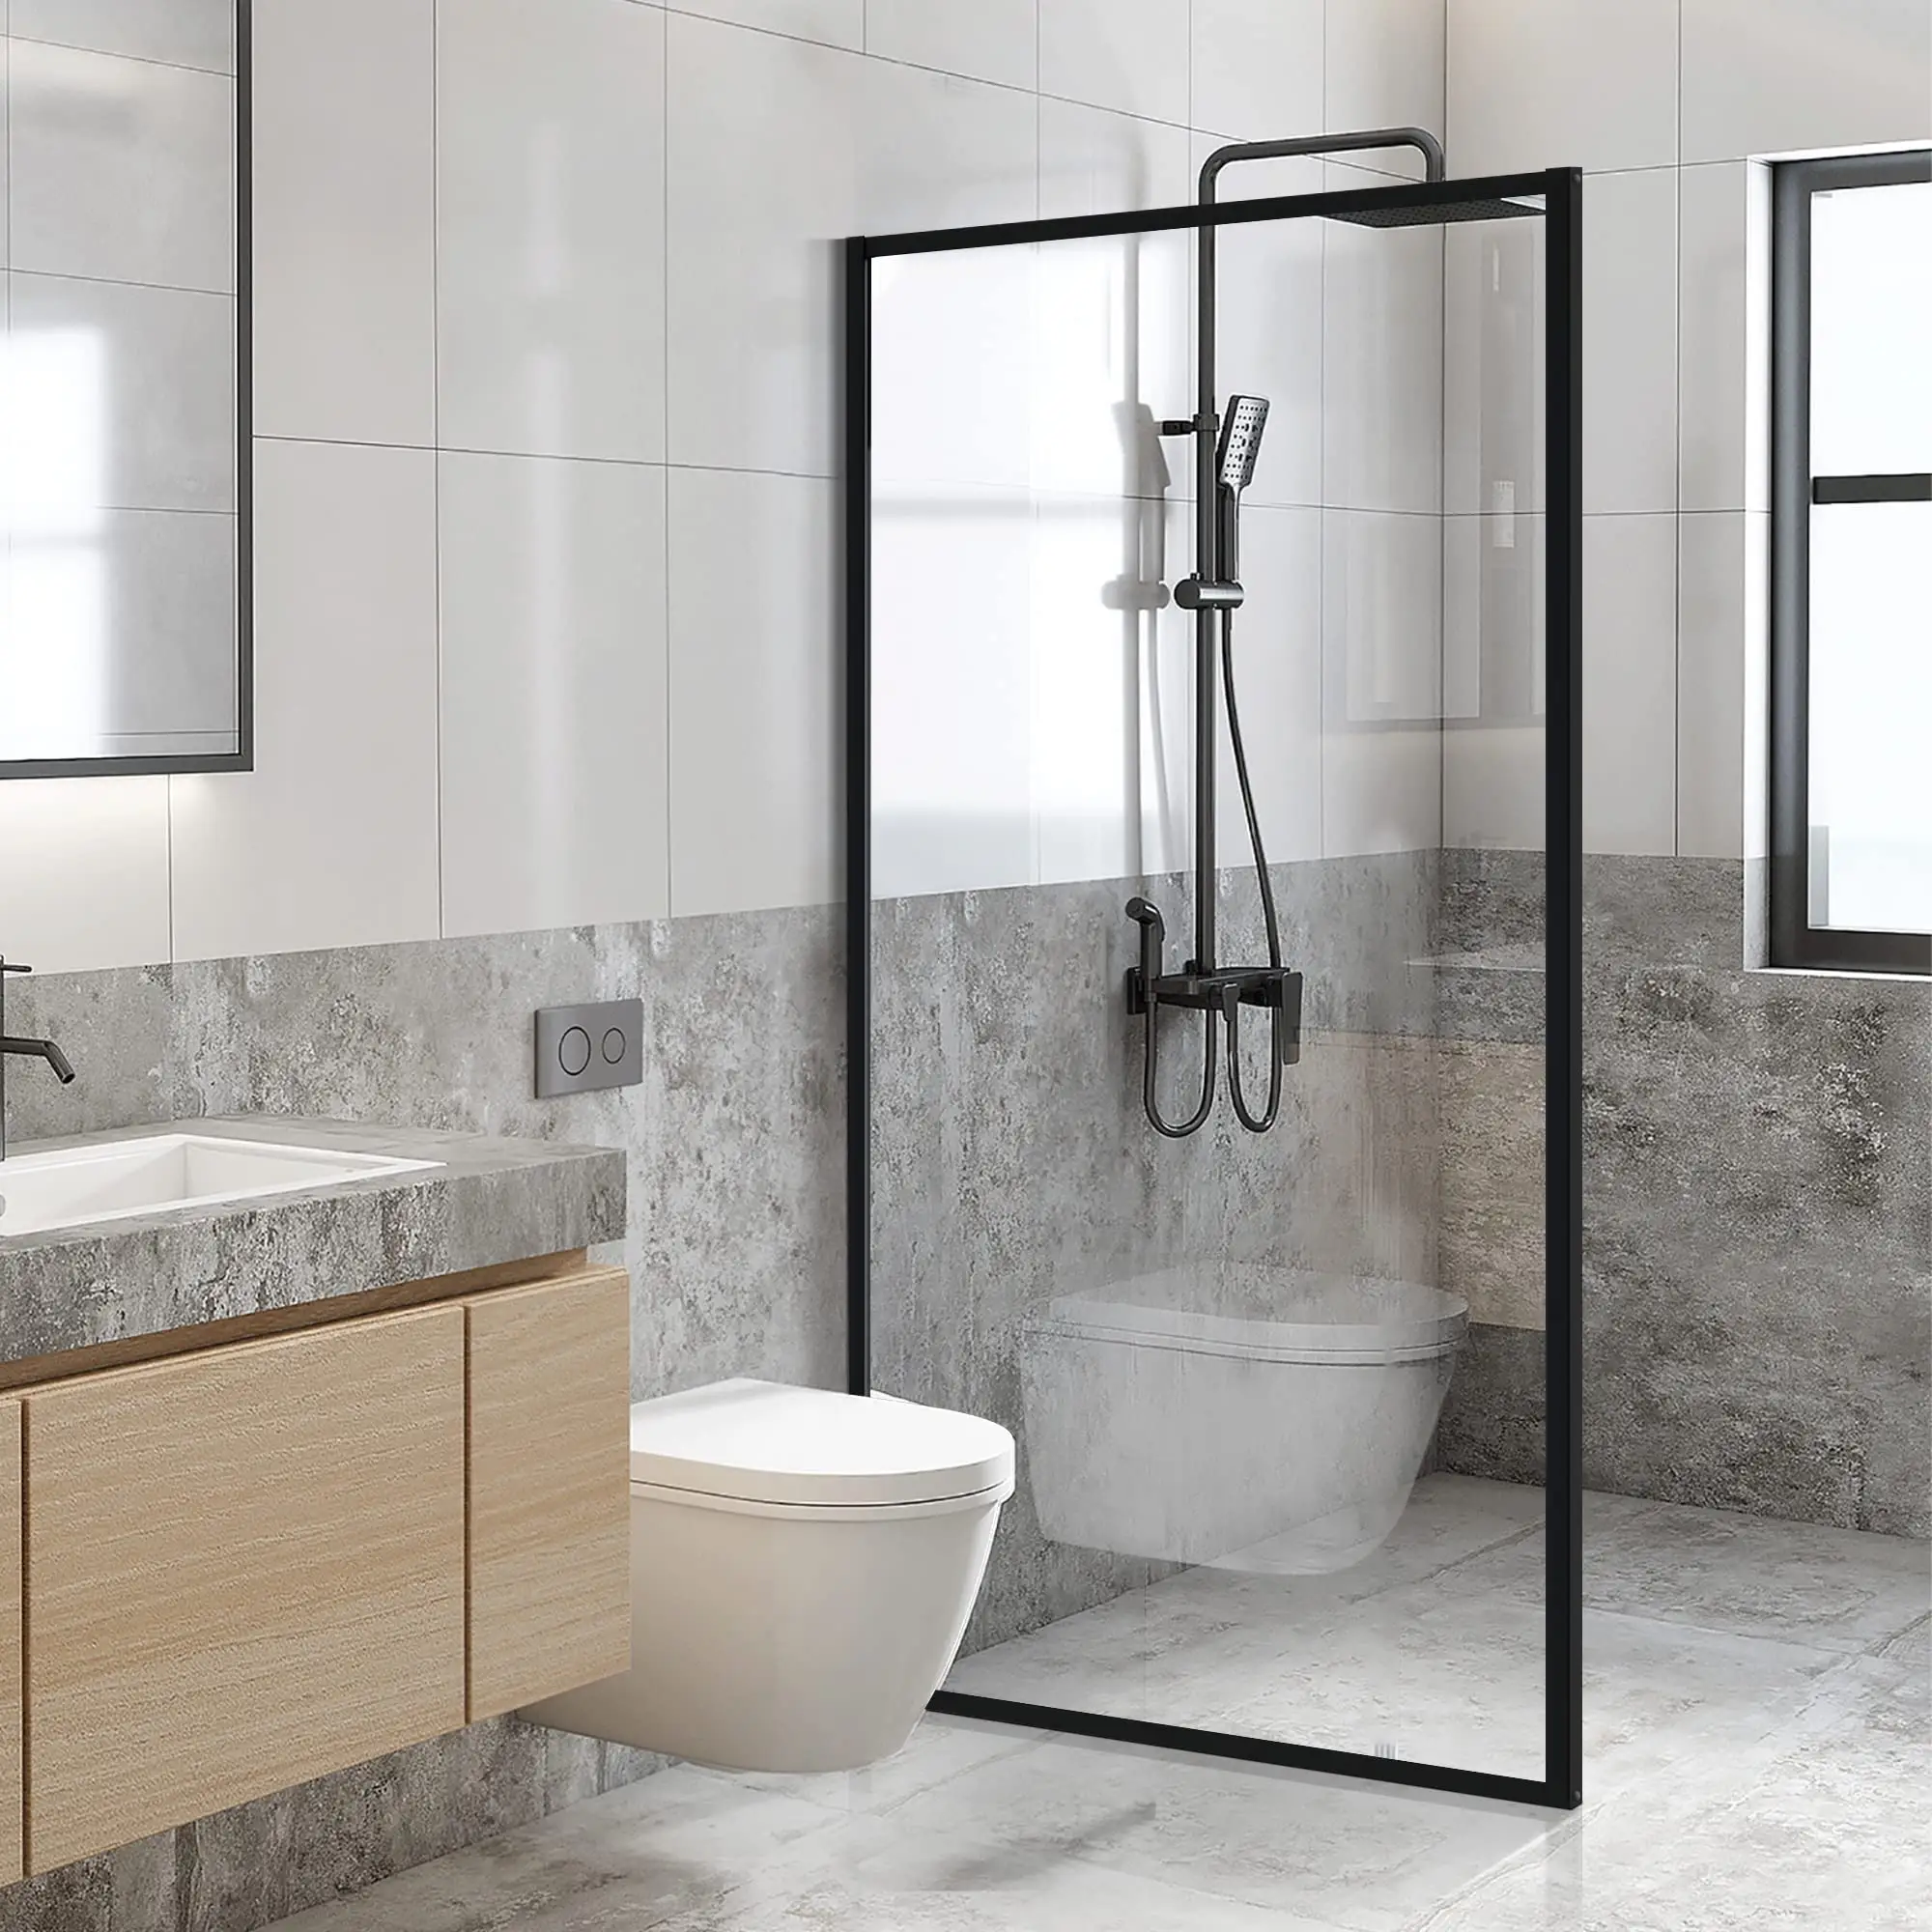 غرفة استحمام بحوض استحمام بباب منزلق فردي من الألومنيوم ، معدات سوداء من الزجاج الشفاف بدون إطار